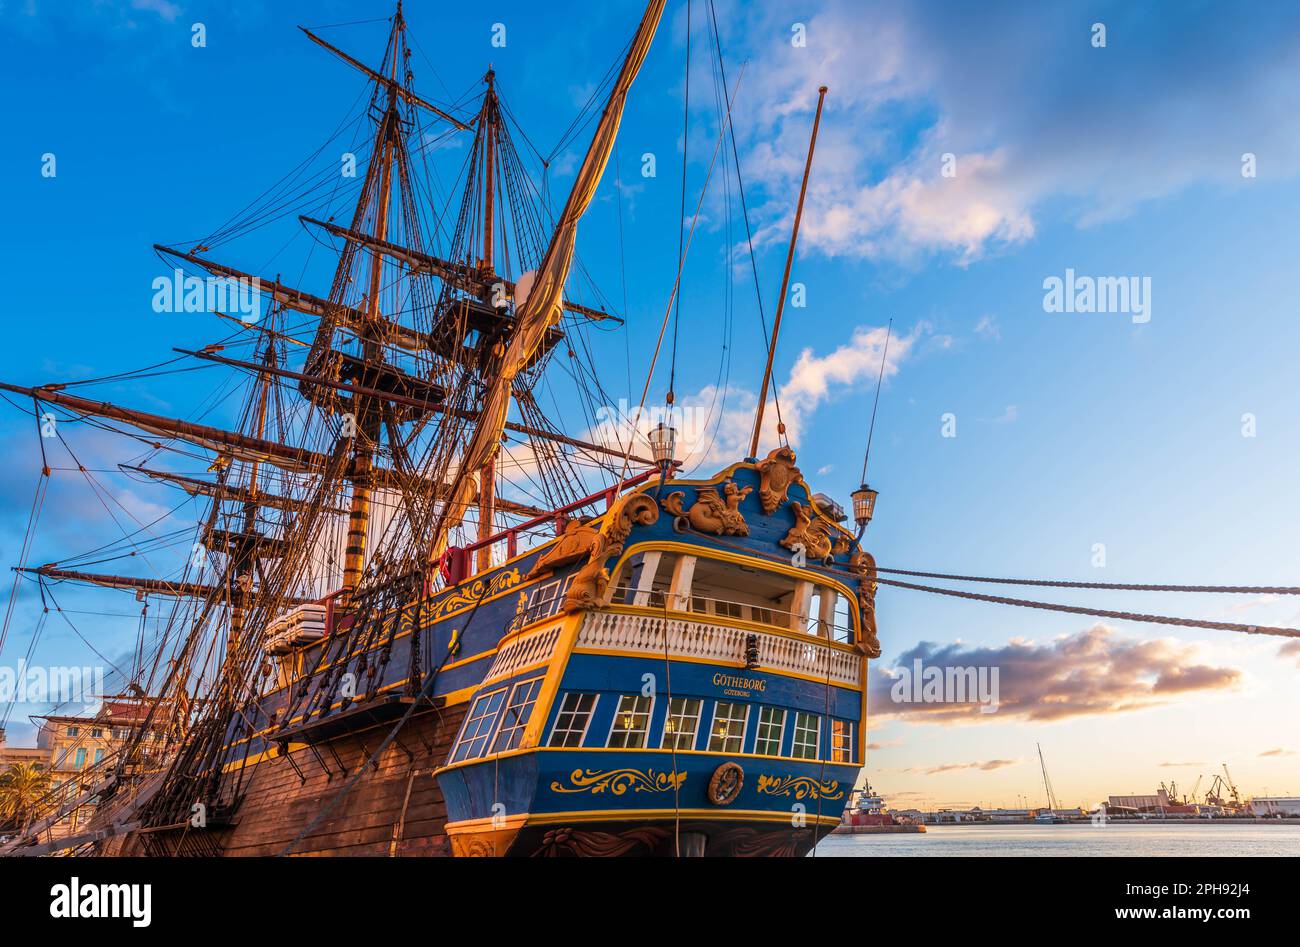 Le plus grand voilier du monde, le Gotheborg, dans le port de Sète, en Occitanie, en France Banque D'Images